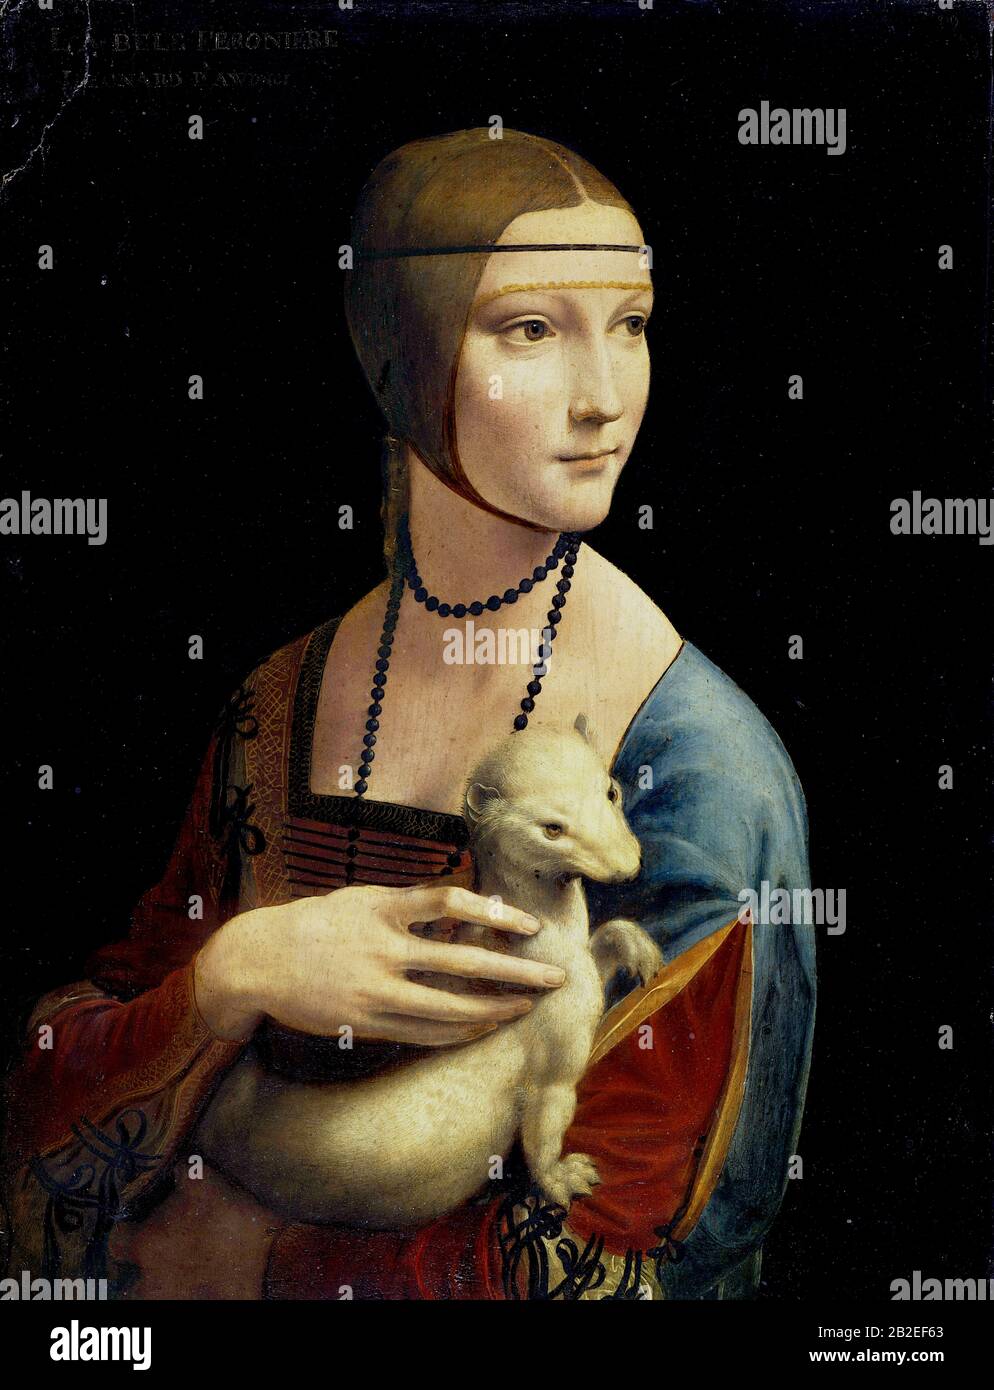 The Lady with an Ermine (Porträt von Cecilia Gallerani) (ca. 1490) von Leonardo da Vinci - Sehr hochwertiges und hochauflösendes Bild Stockfoto